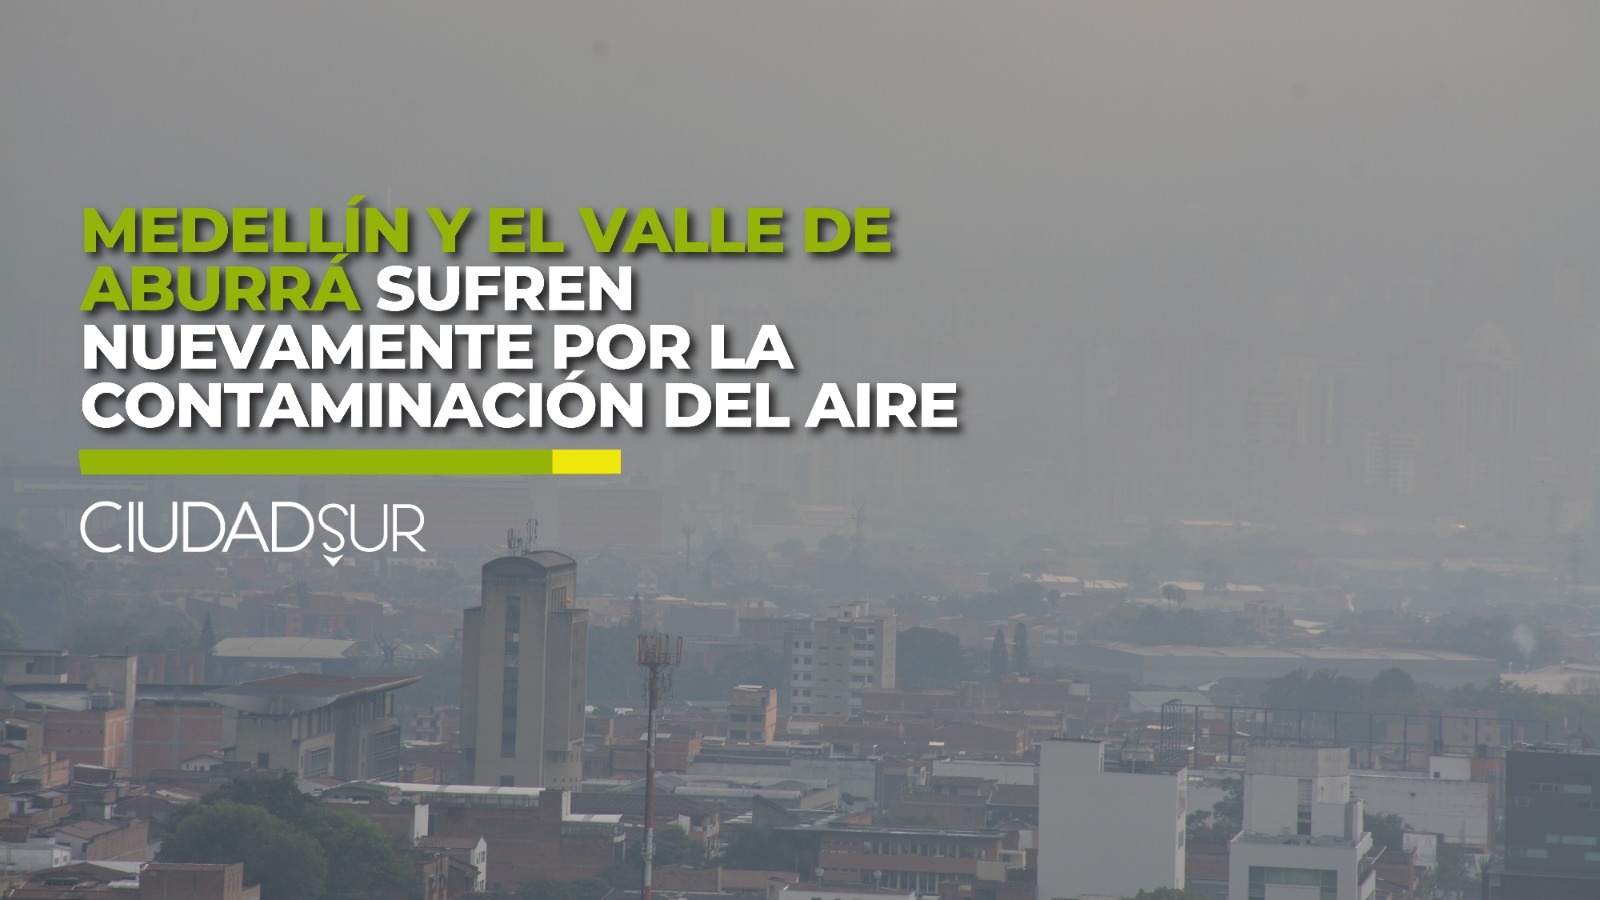 VIDEO: Medellín y Valle de Aburrá sufren nuevamente por la mala calidad del aire